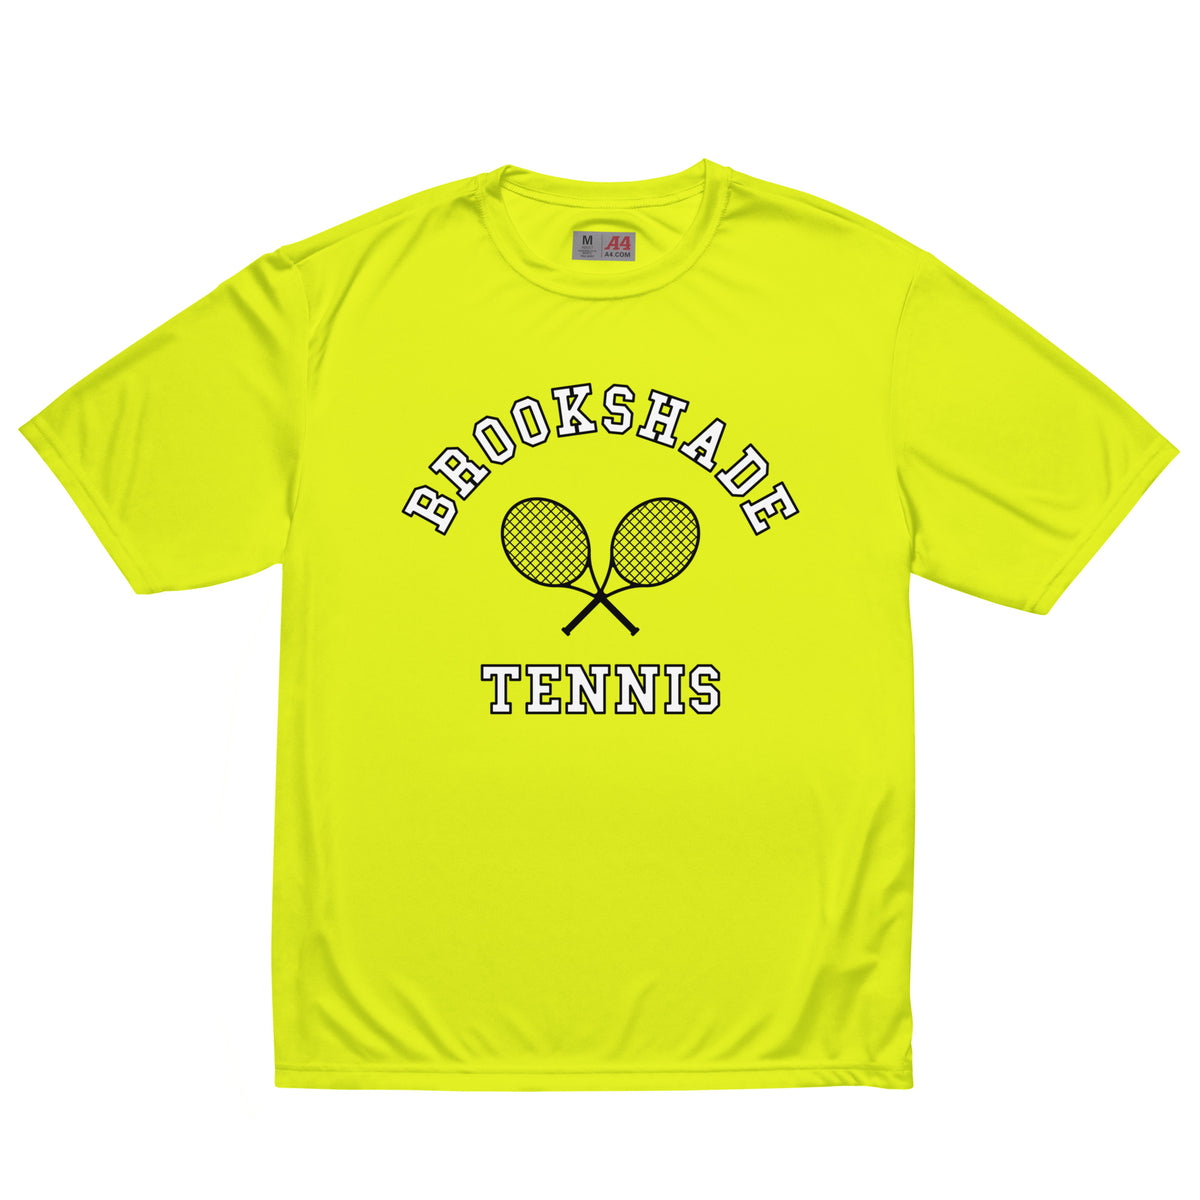 Brookshade Tennis Performance Tee